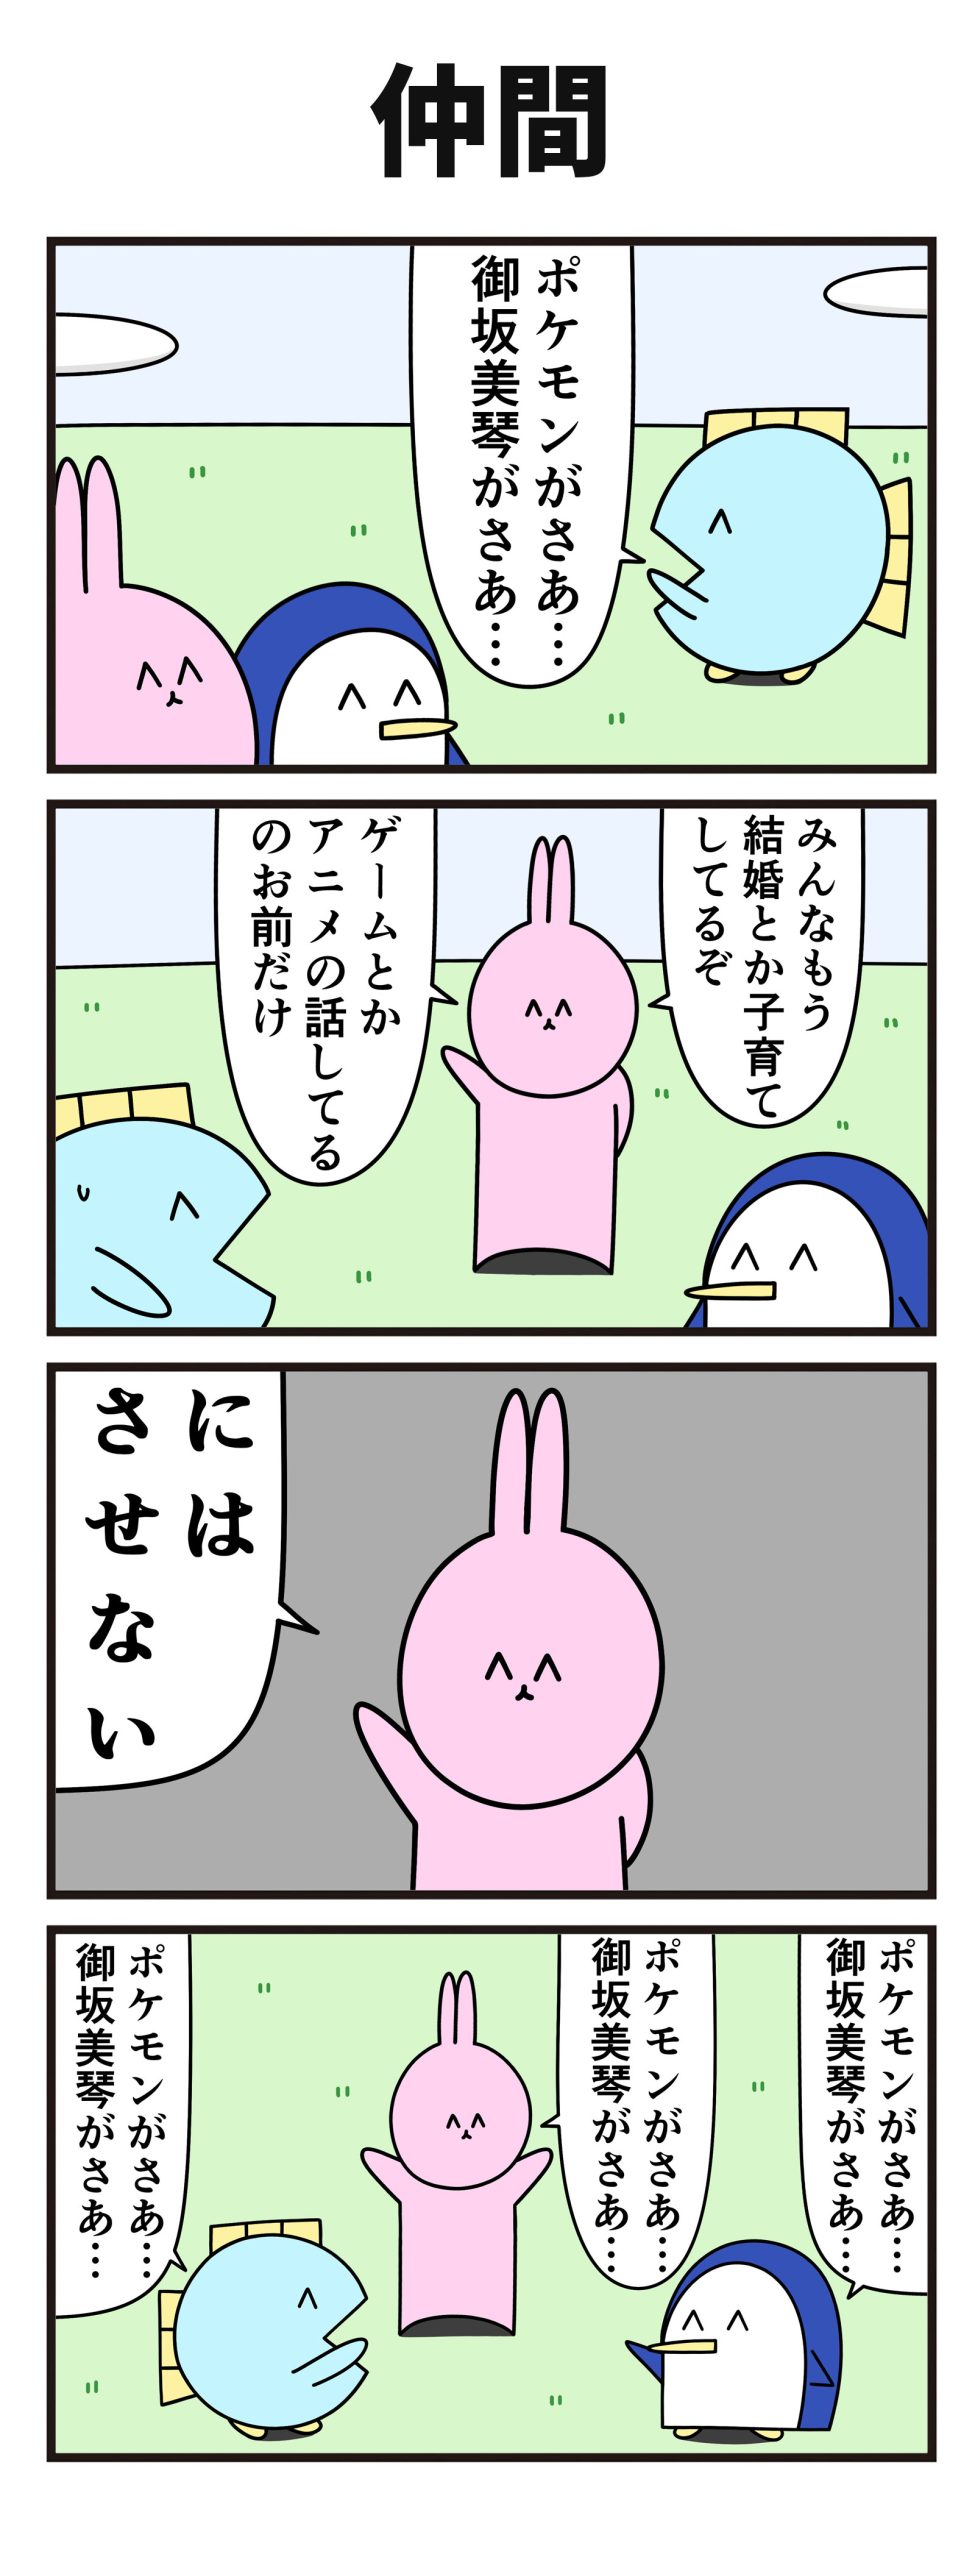 【ニョペ茄子】4コマ漫画「仲間」